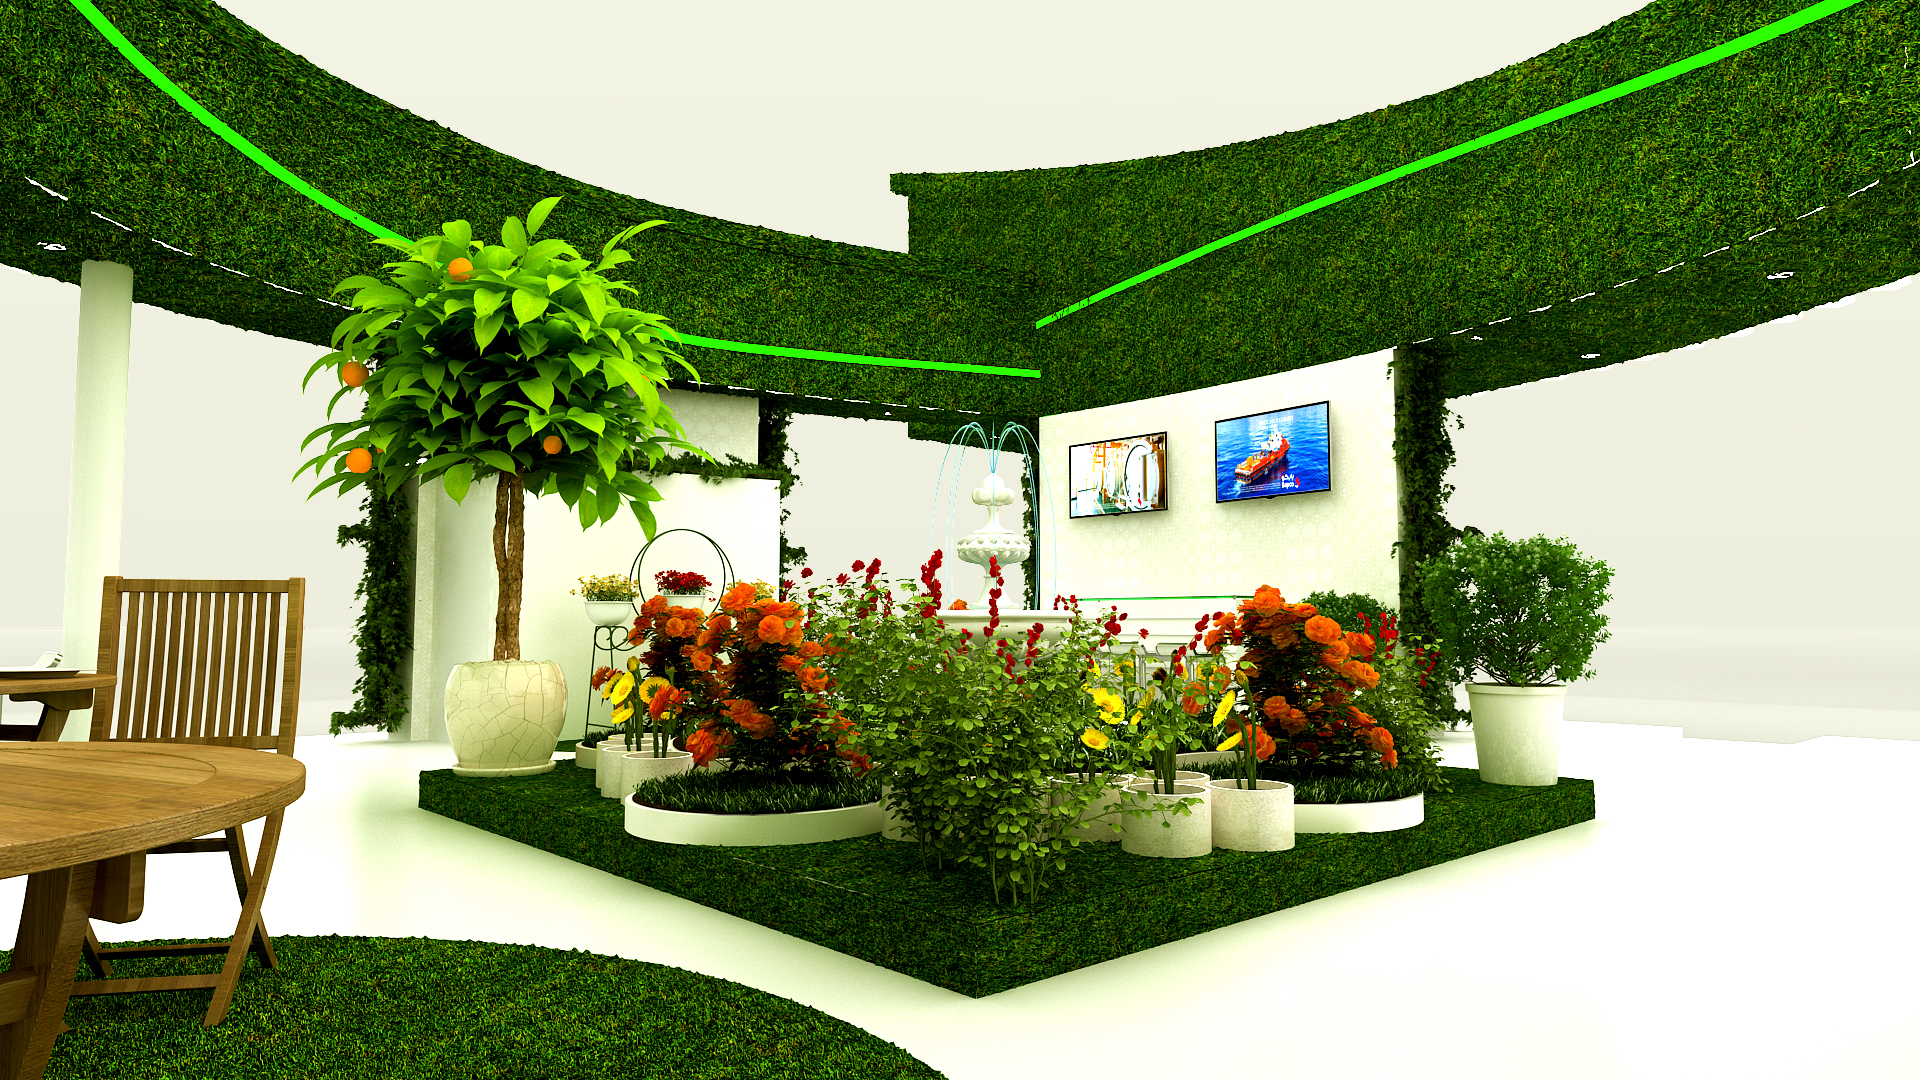 Conceptual Garden Show Design for - BAPCO-4